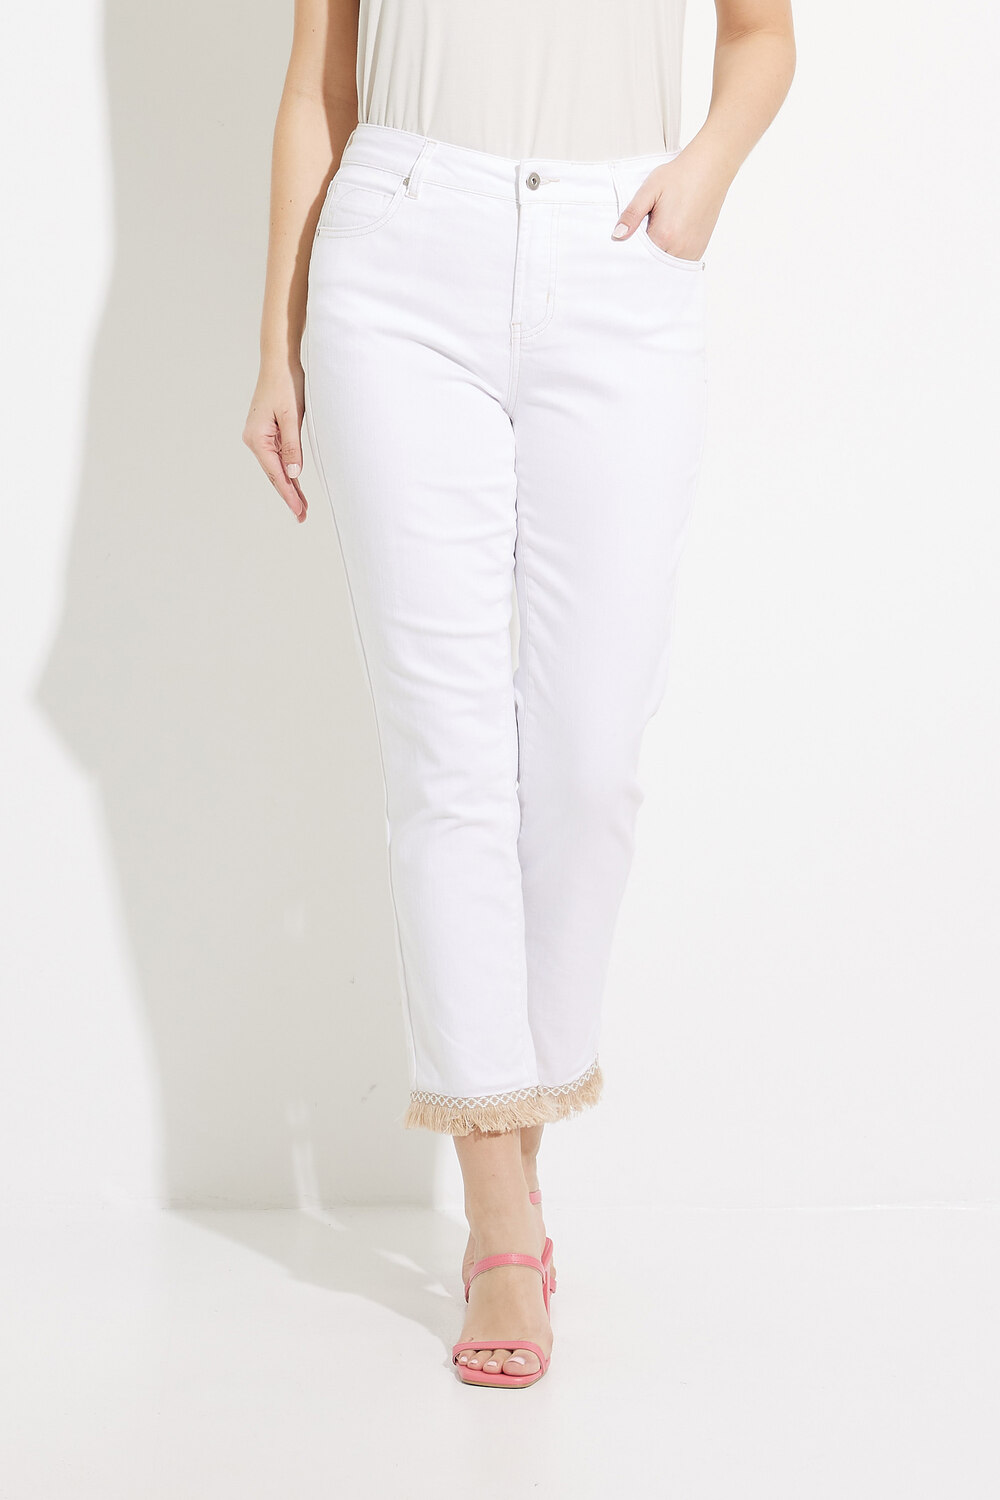 Tassel Hem Pants Style C5393. Blanc